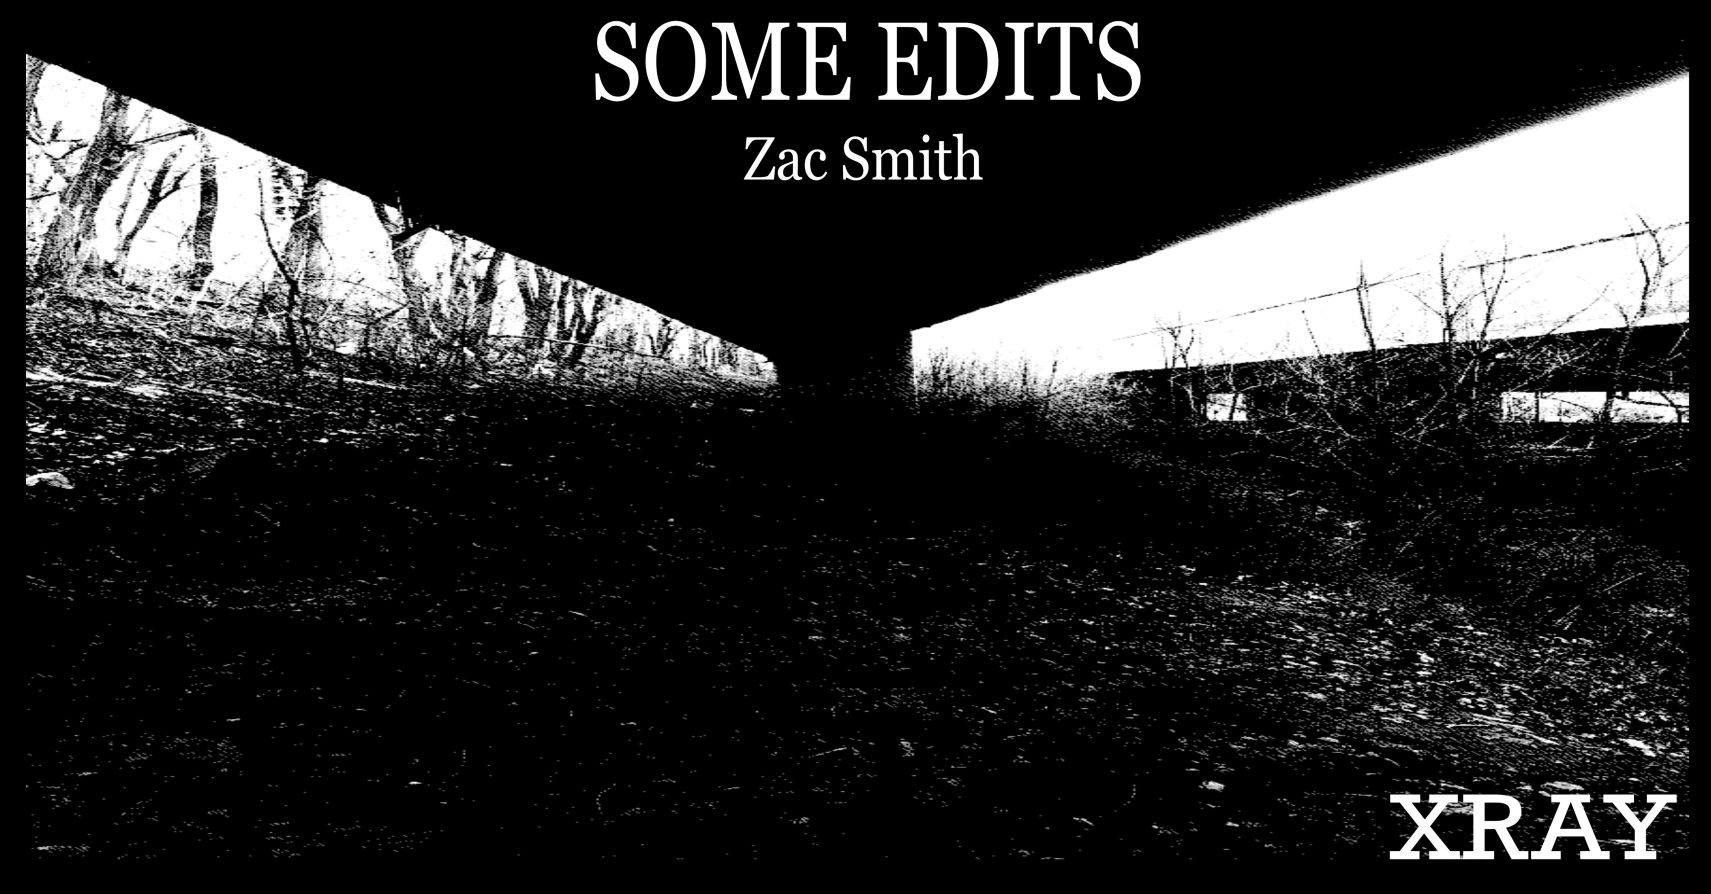 SOME EDITS by Zac Smith